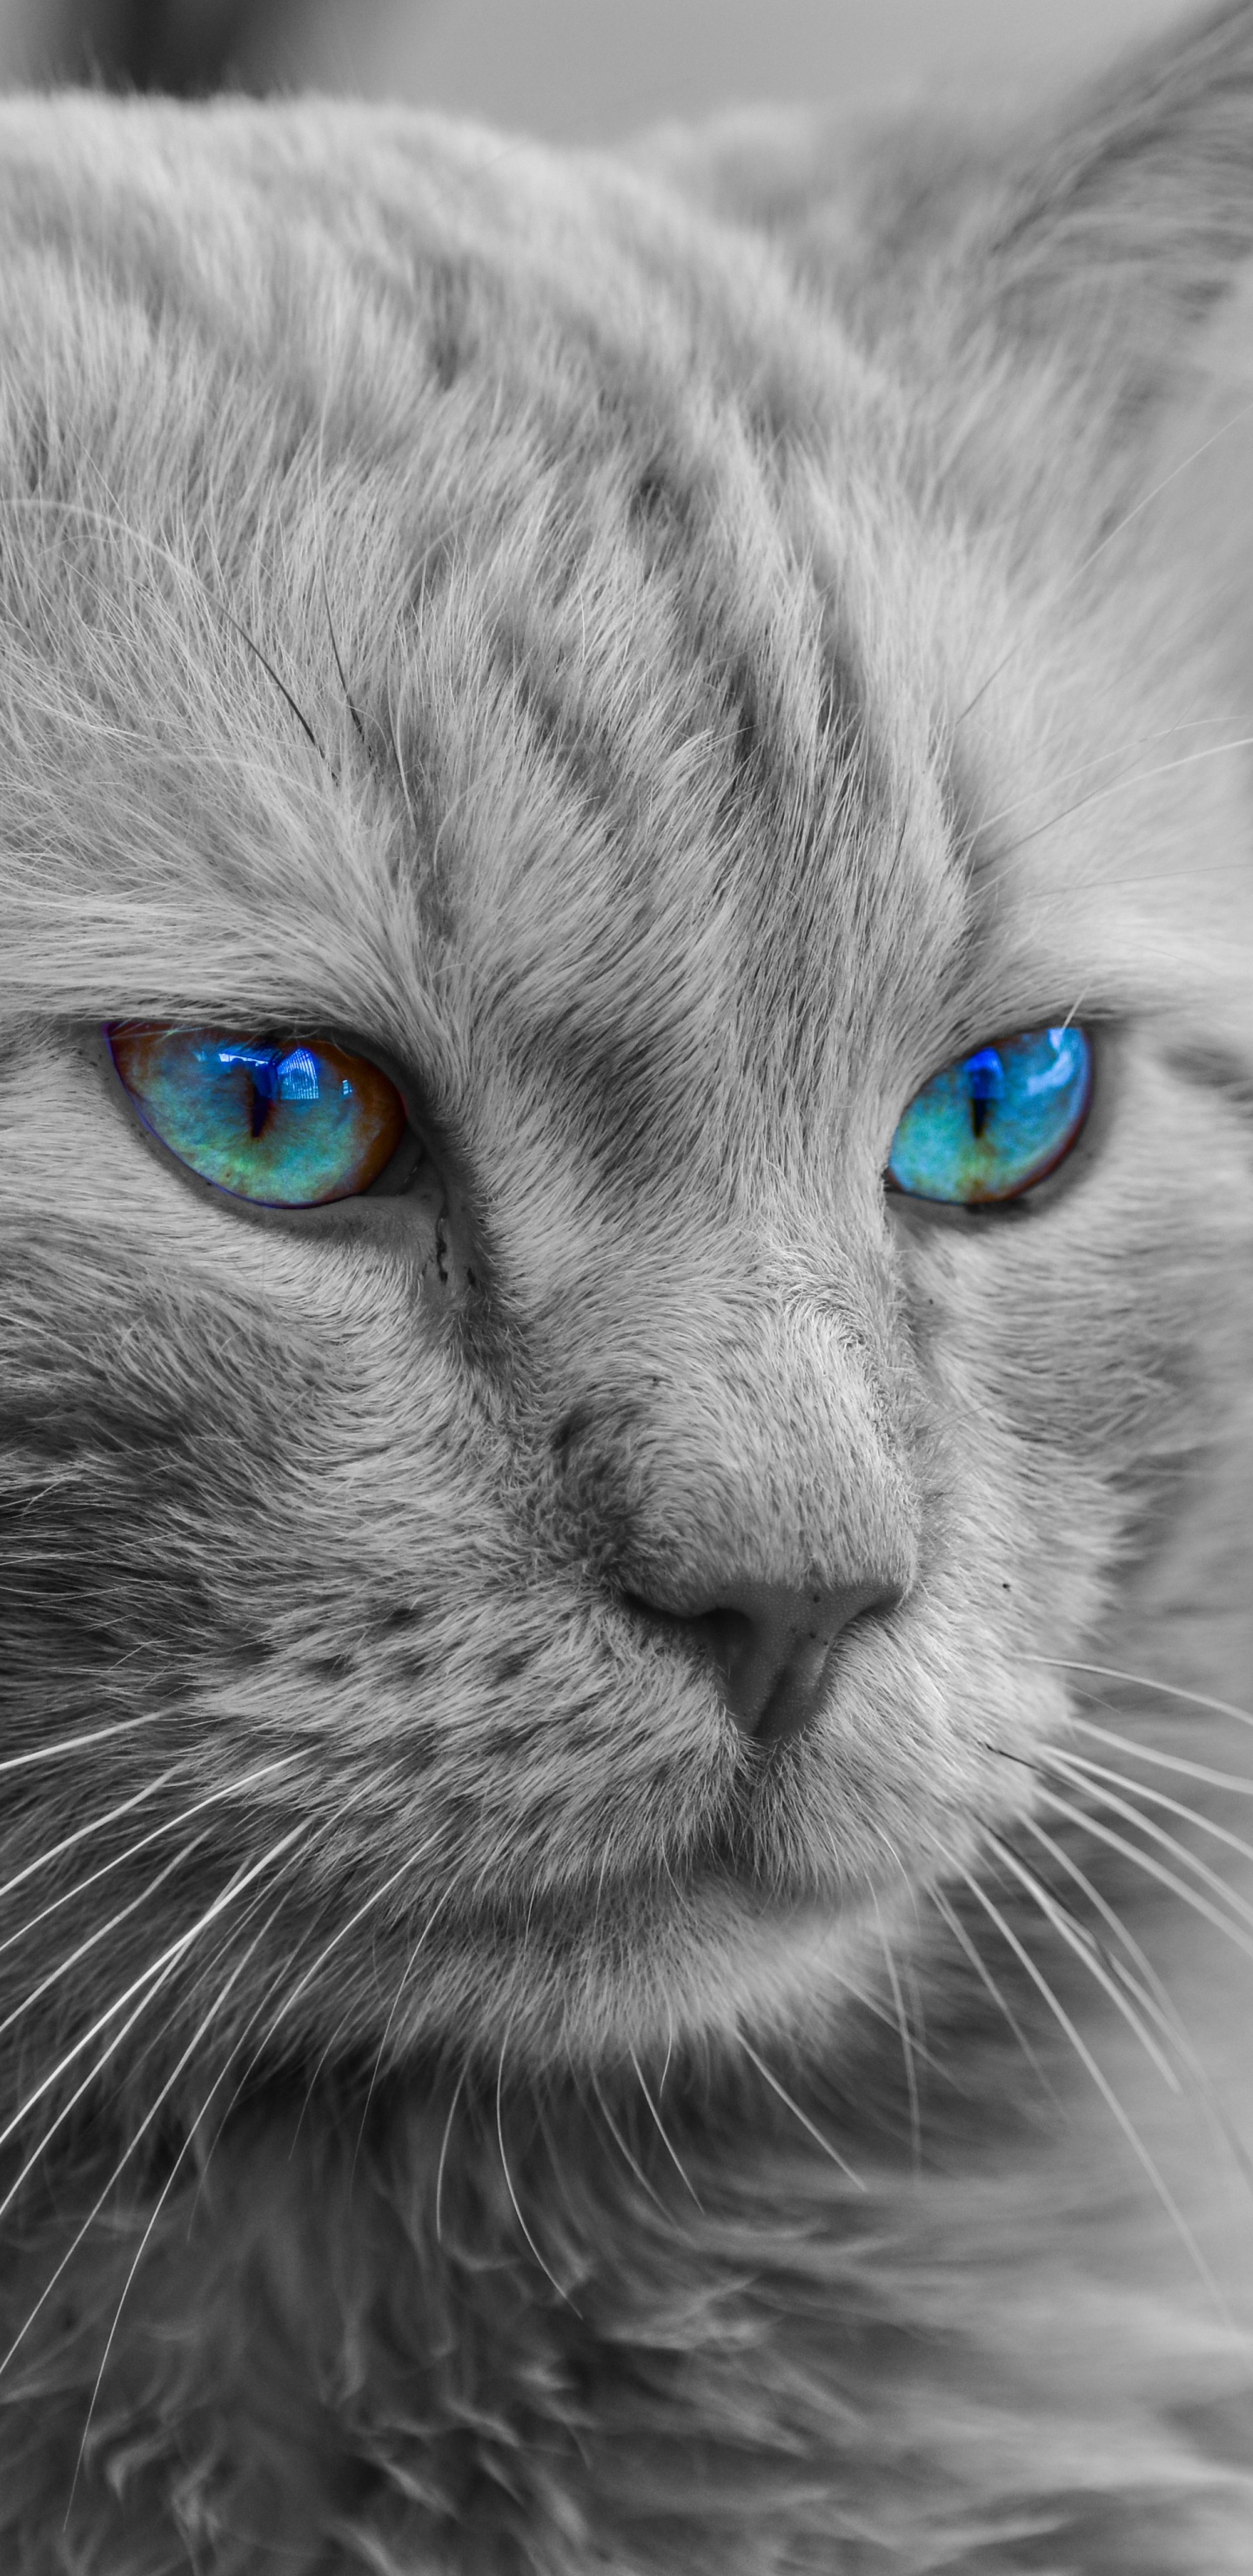 Graustufenfoto Einer Katze Mit Blauen Augen. Wallpaper in 1440x2960 Resolution